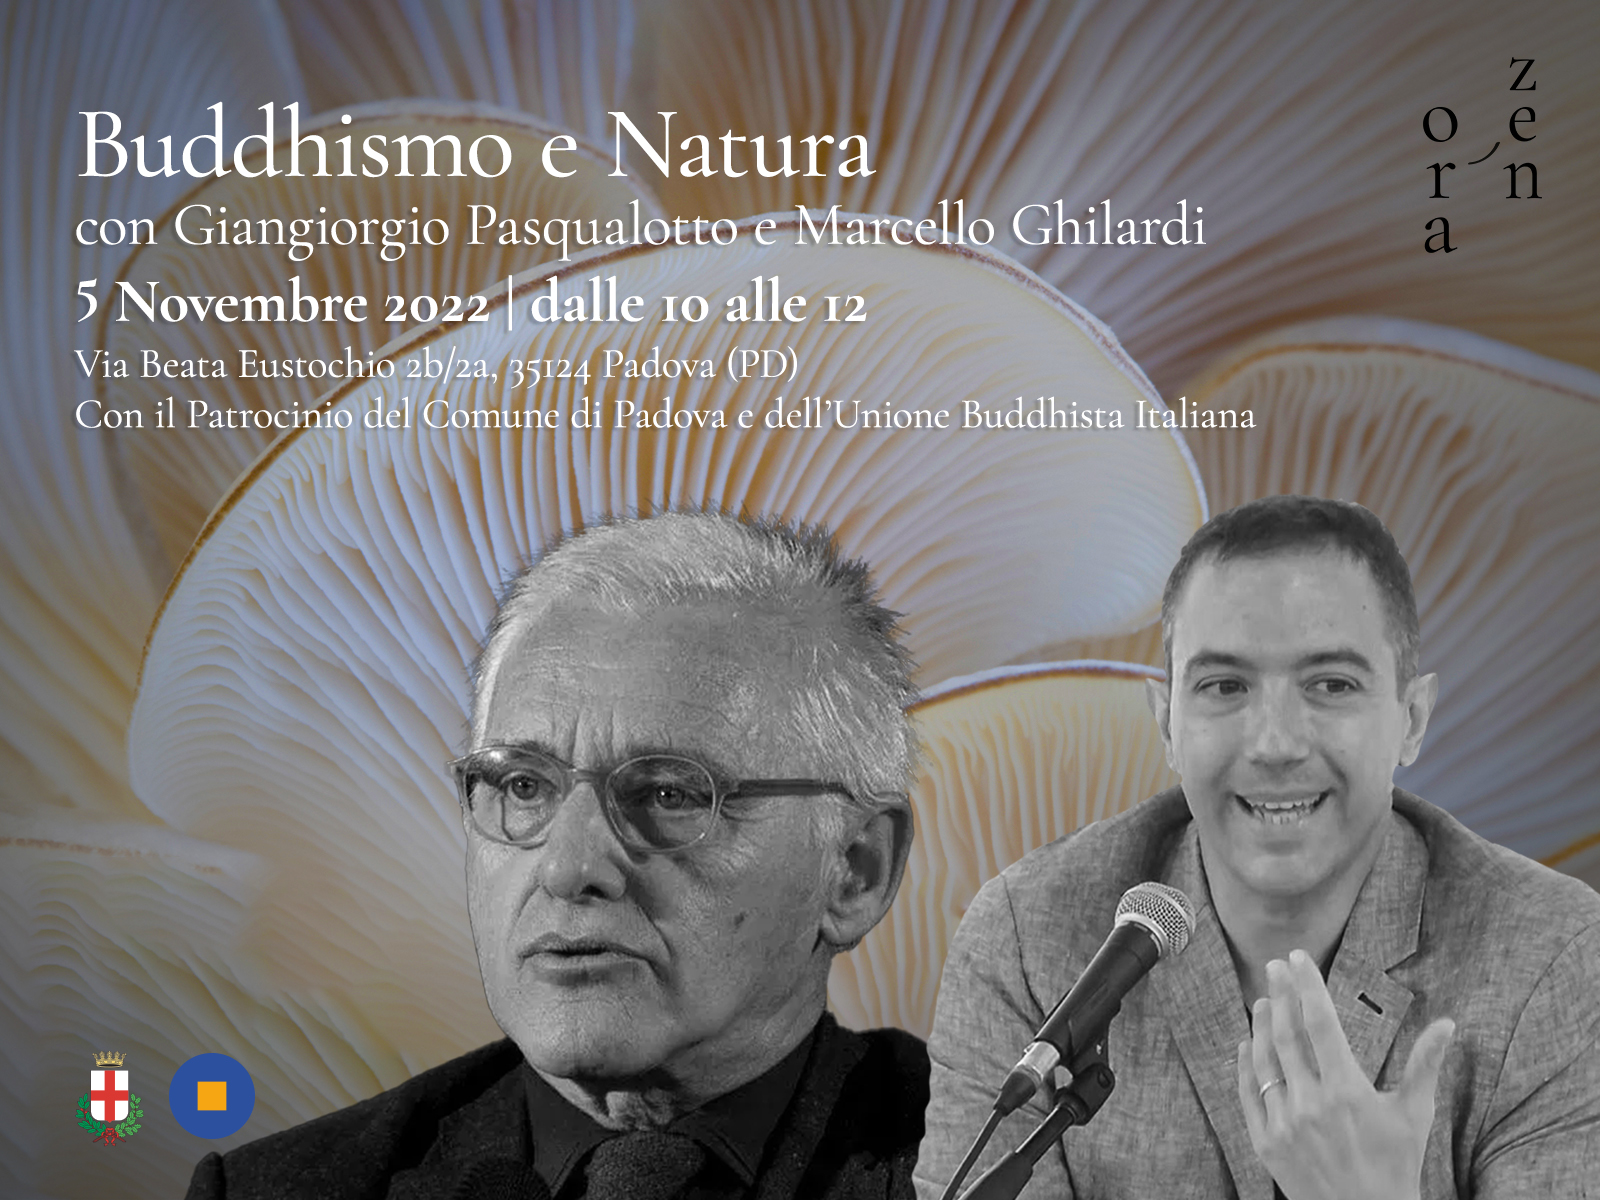 Buddhismo e Natura con Giangiorgio Pasqualotto e Marcello Ghilardi